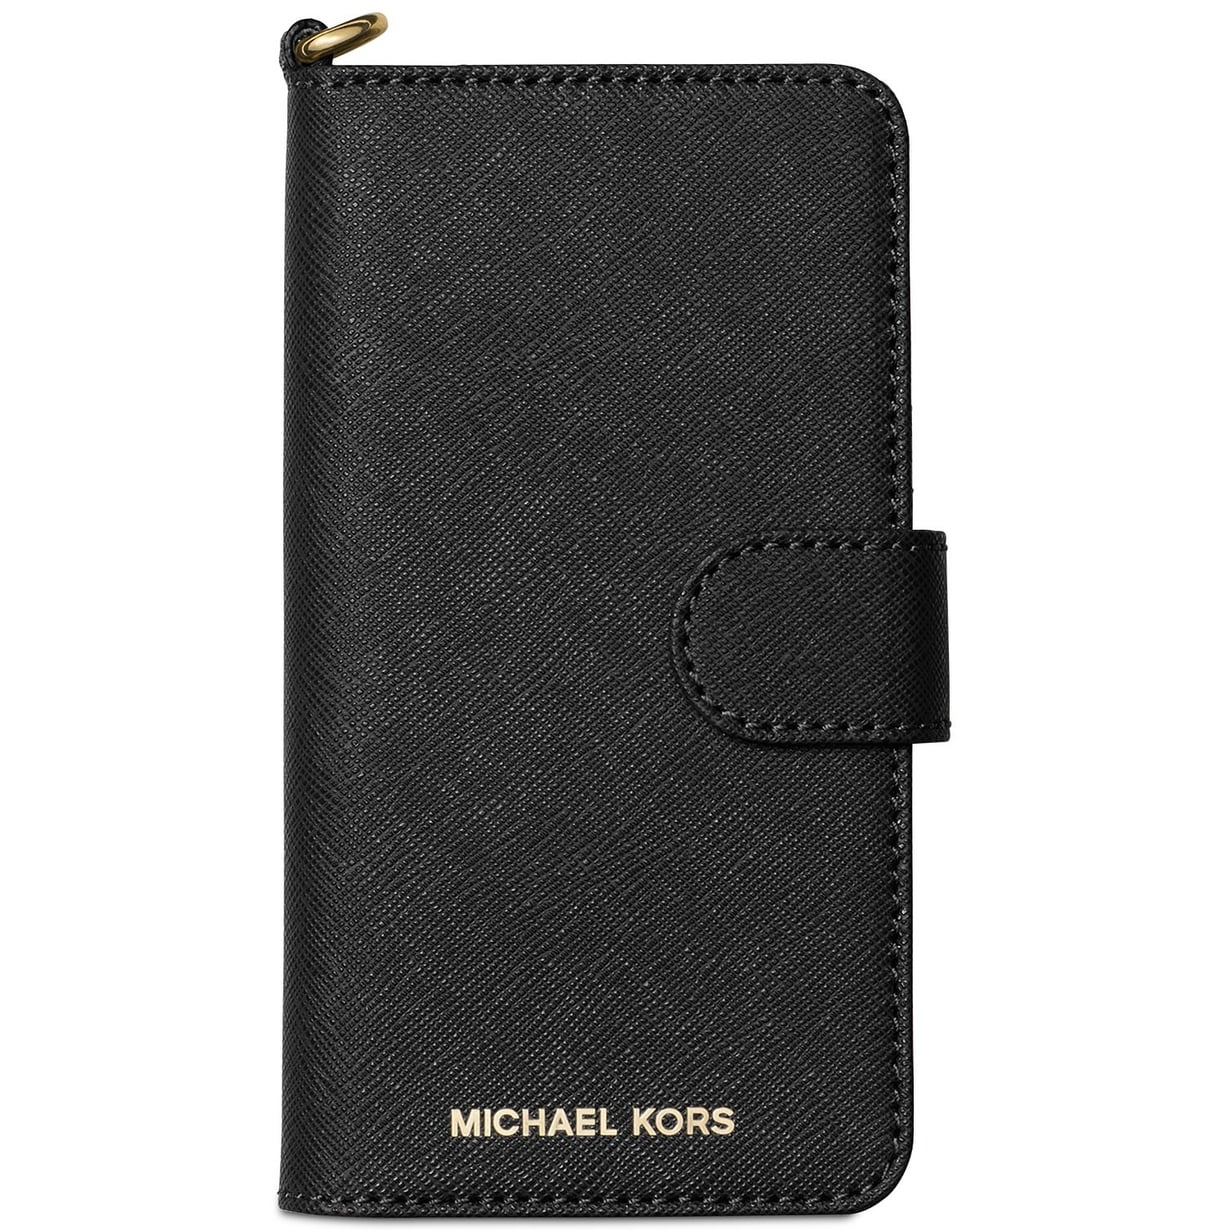 Verwisselbaar majoor Zelfrespect michael kors iphone xs max wallet case